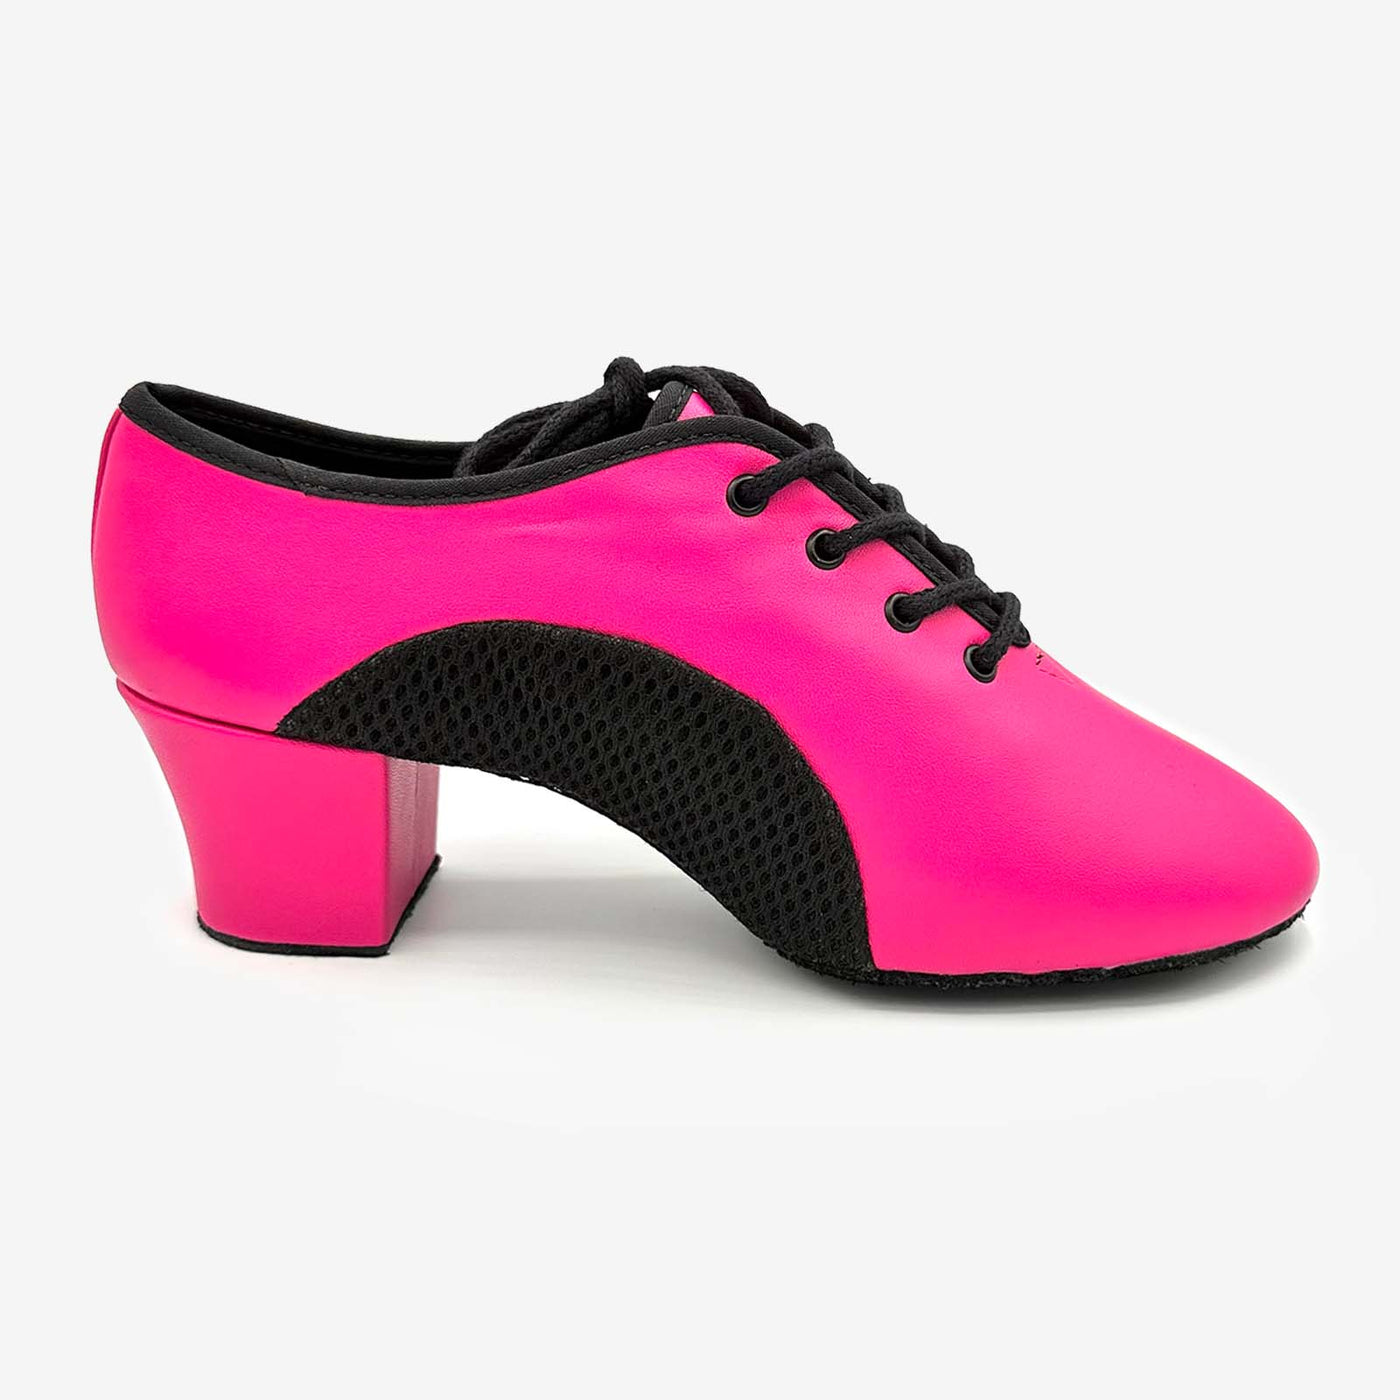 Women's Jazz Shoes Lace-up Dance Sneakers – DanceandSway